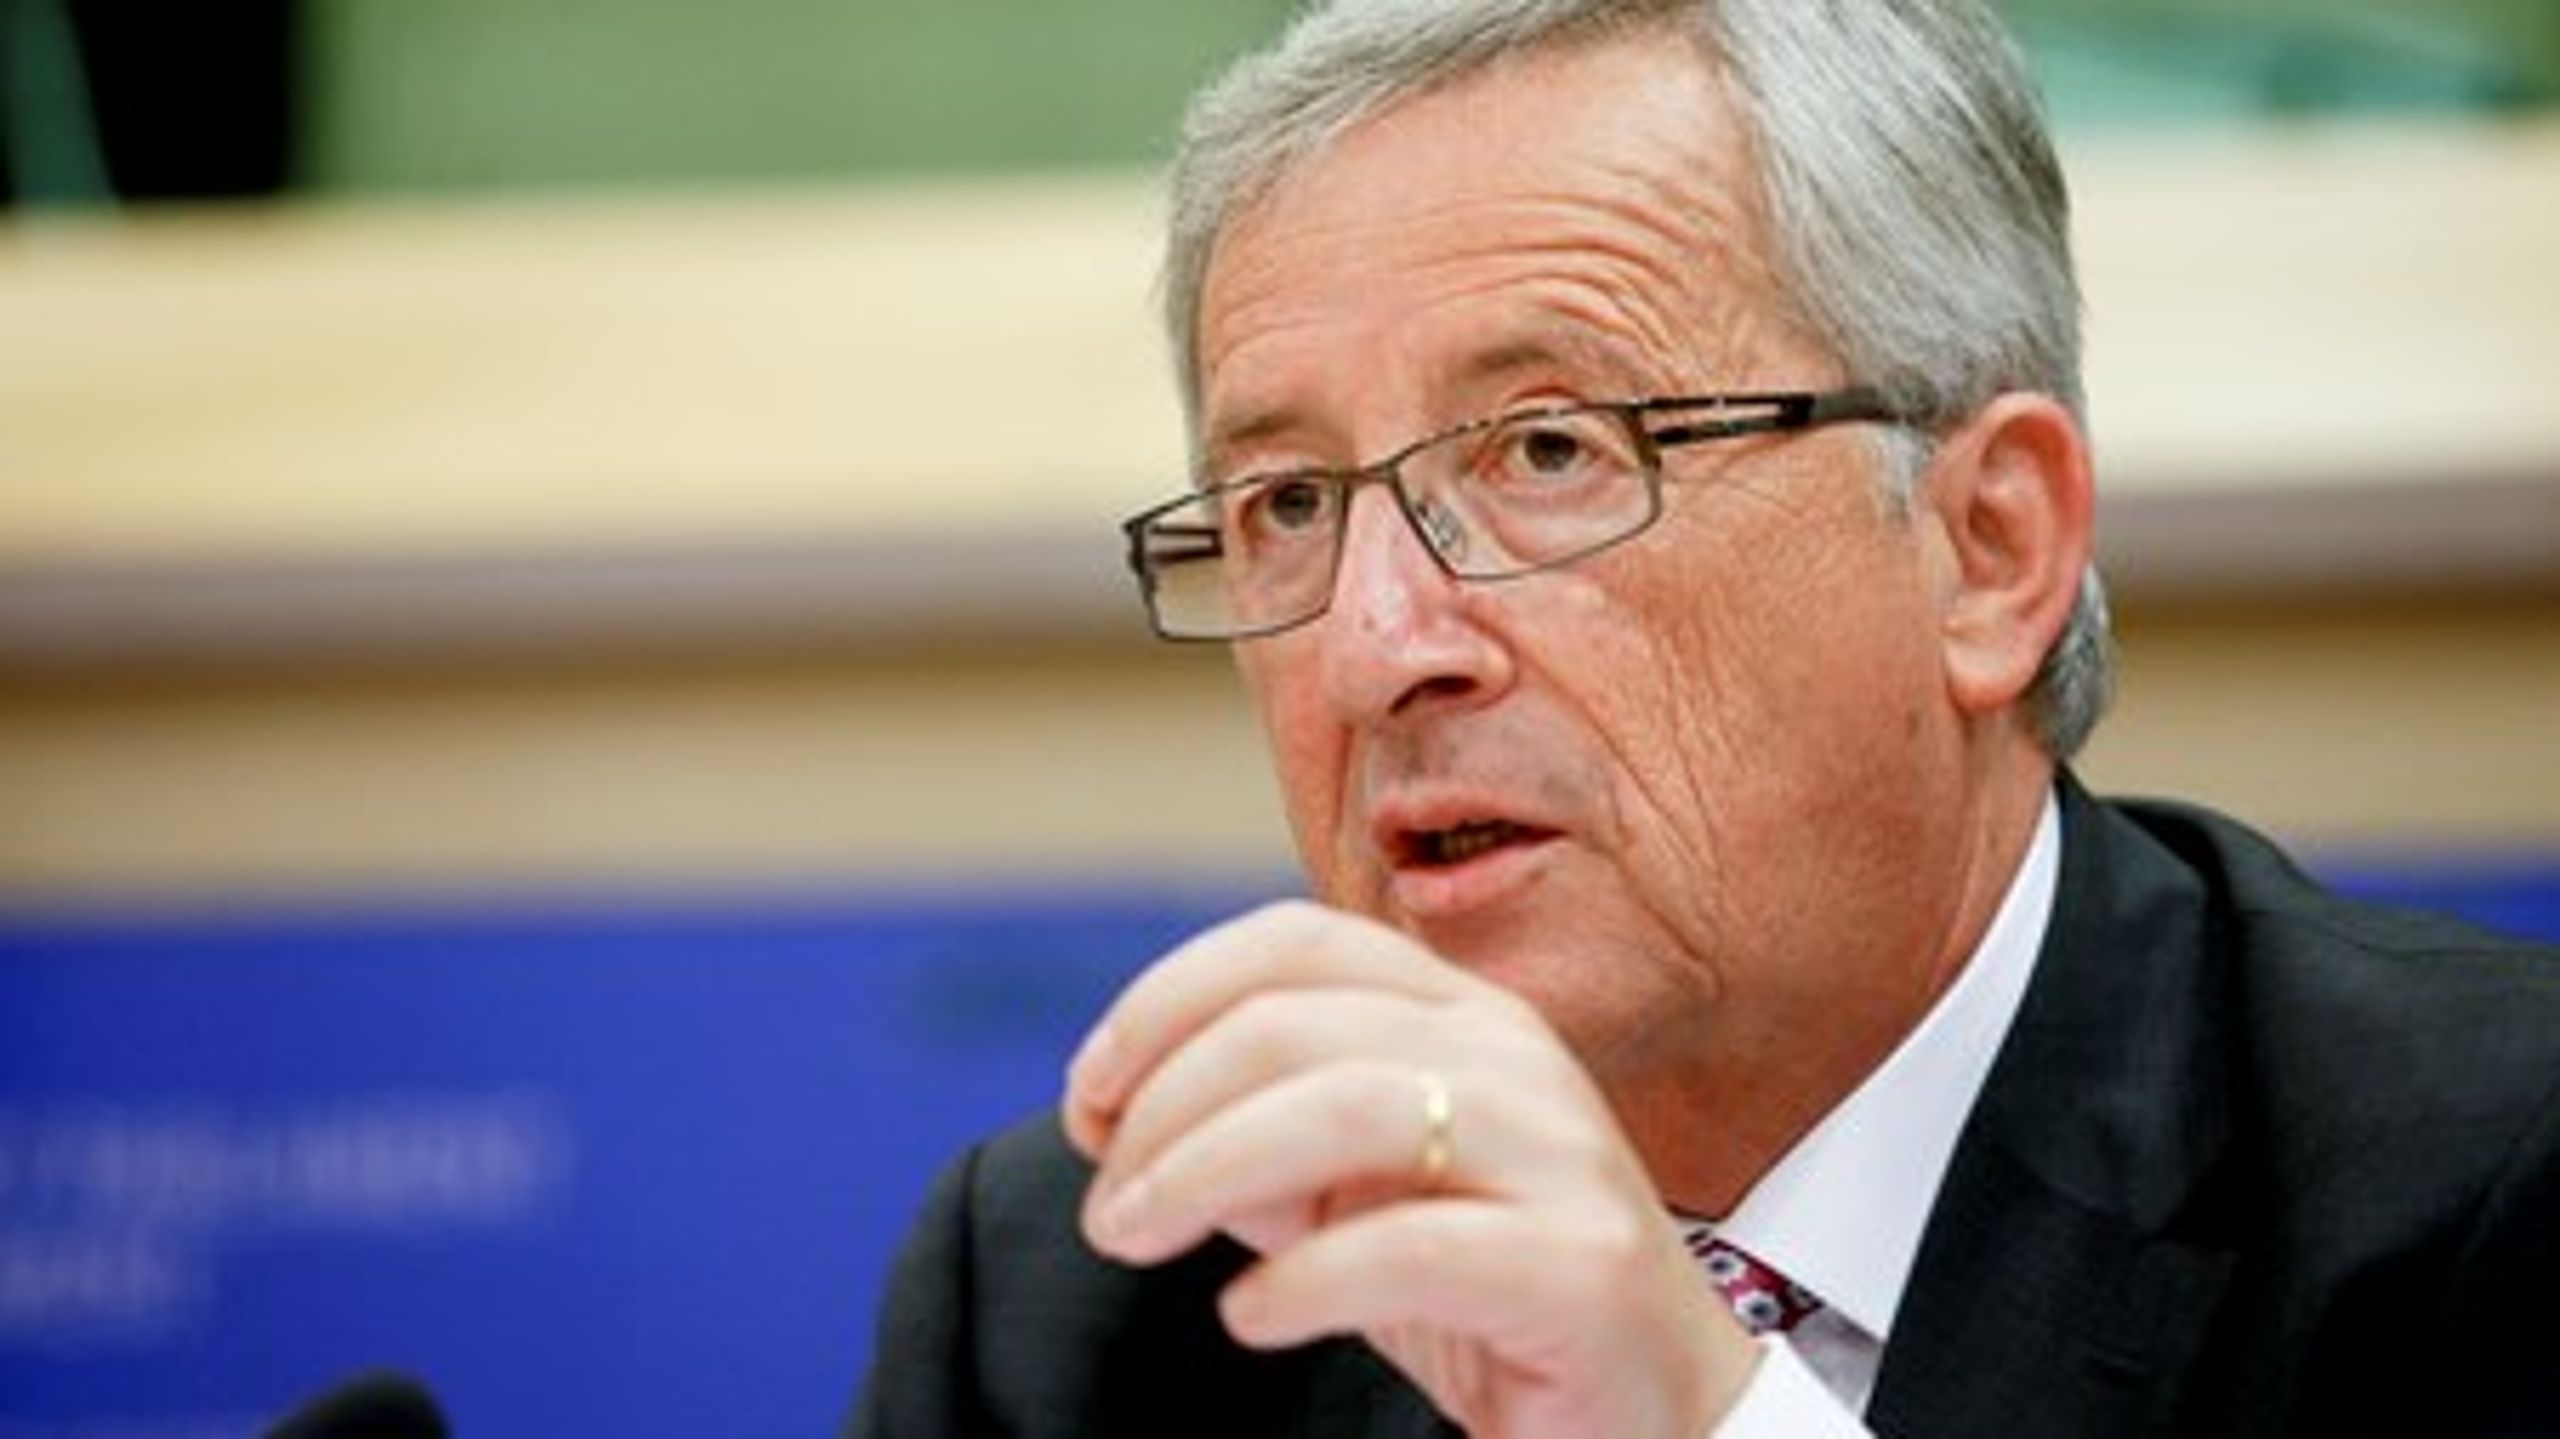 Den nye formand for EU-Kommissionen, Jean-Claude Juncker, står til&nbsp;at få Europa-Parlamentet på nakken på grund af sit kommissærhold.&nbsp;